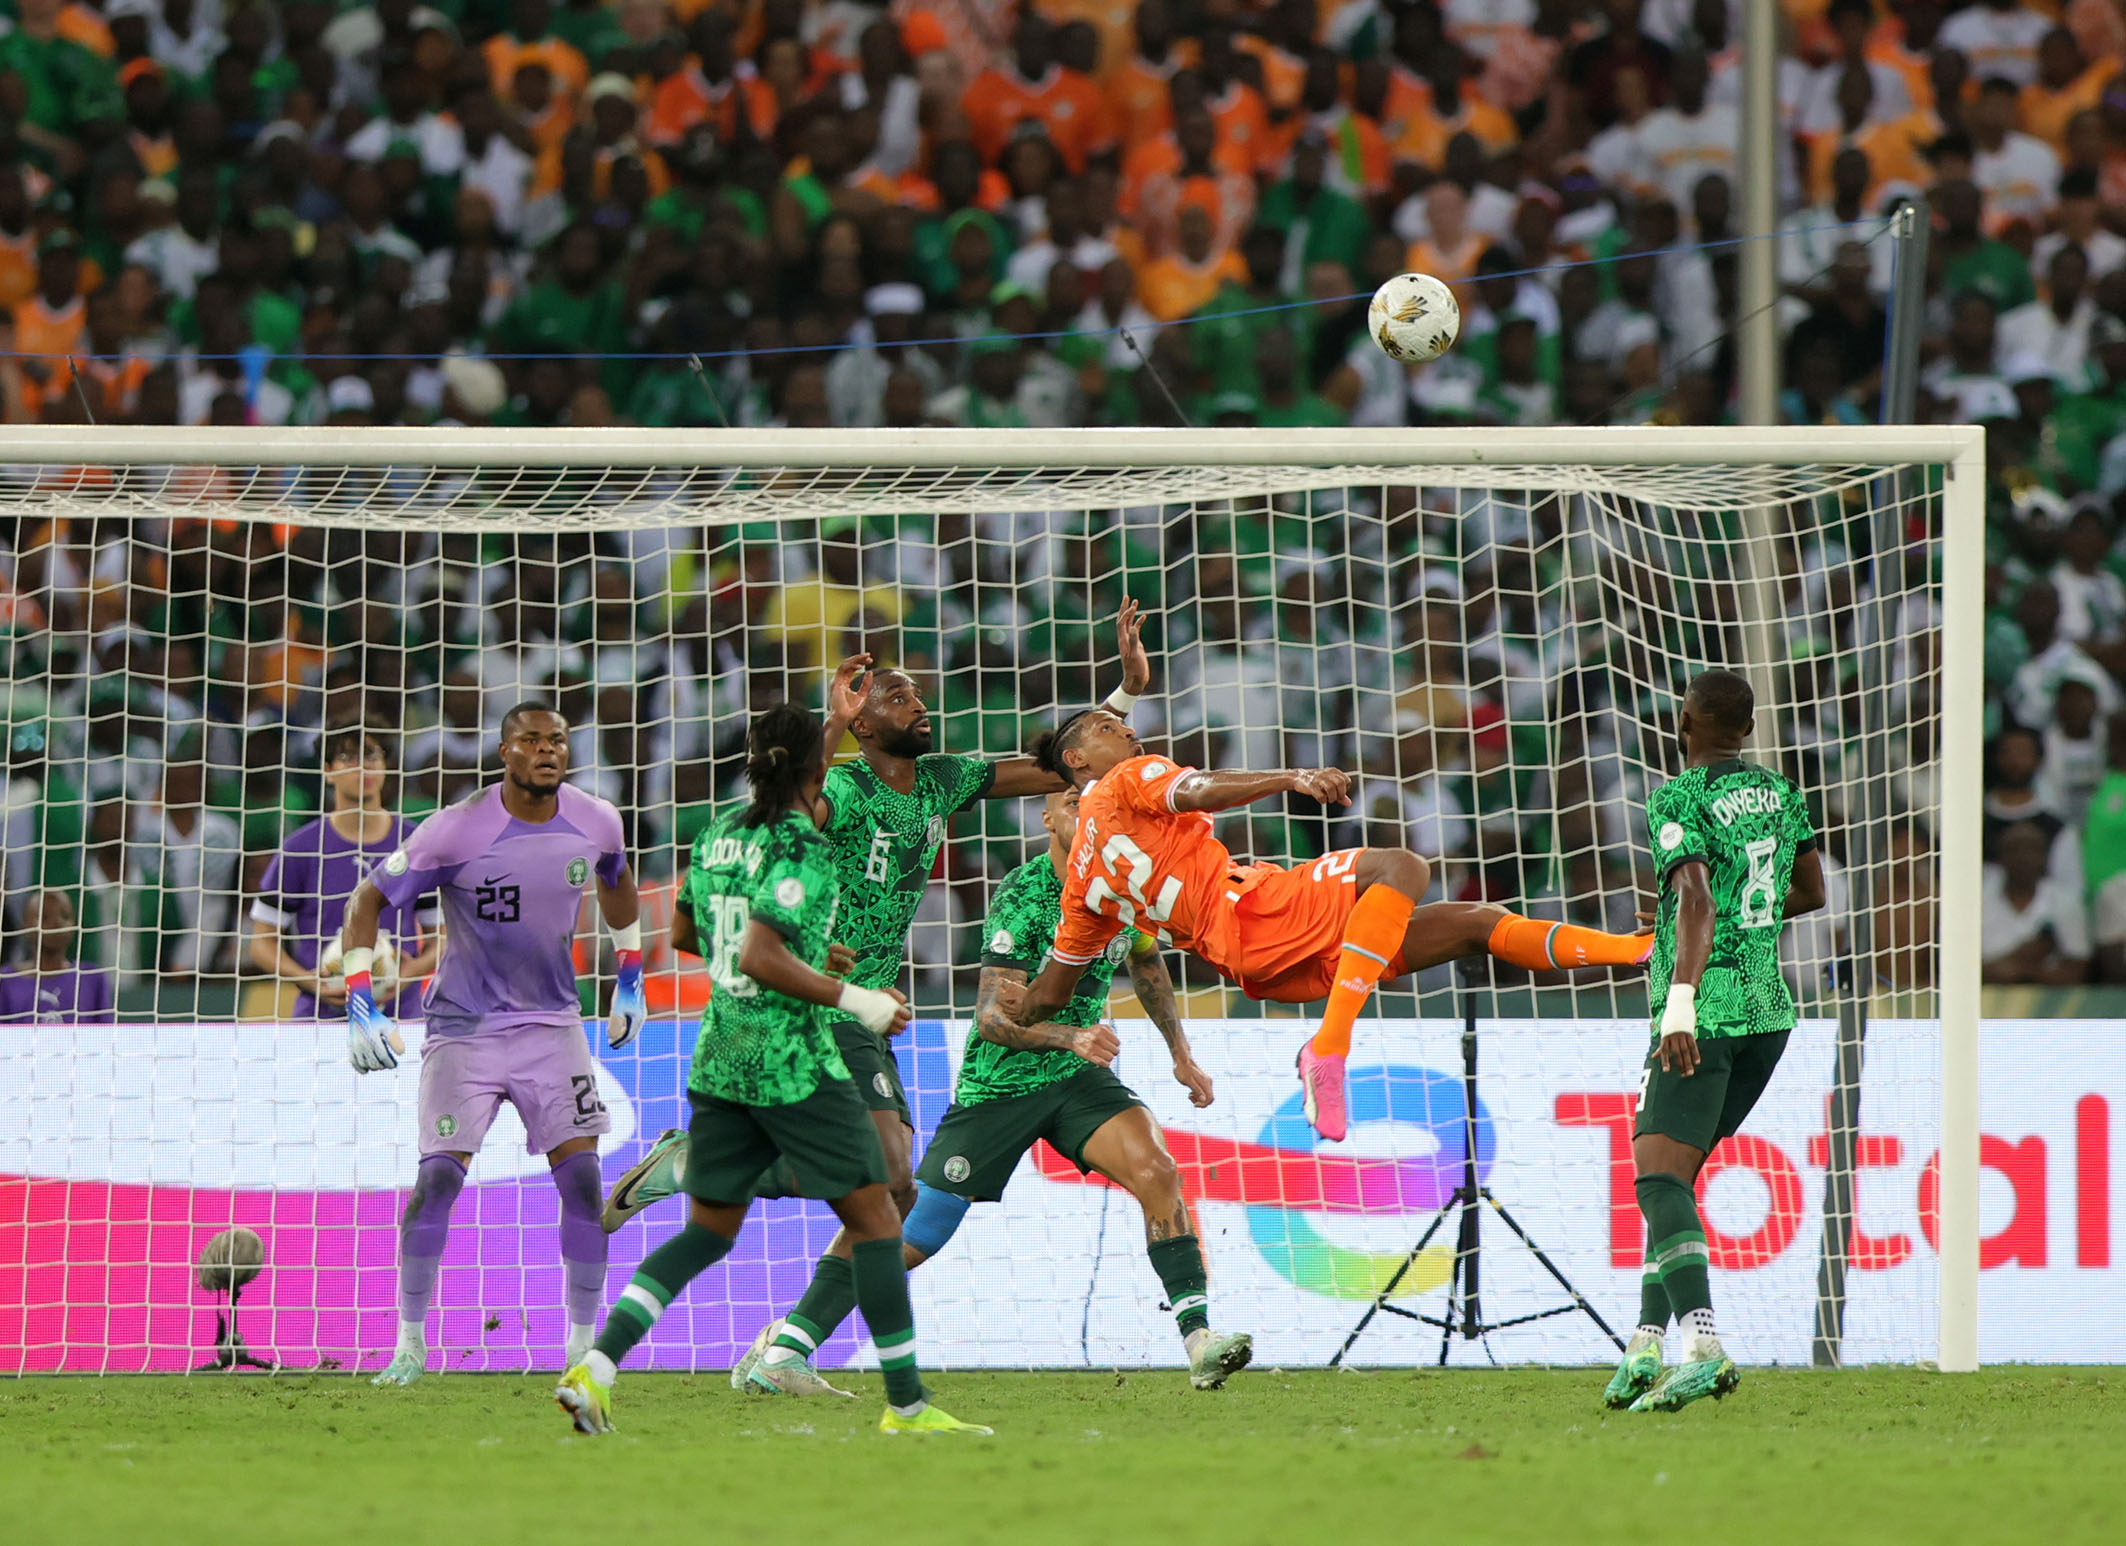 Coasta de Fildeș cucerește titlul la Cupa Africii, după ce a pierdut două meciuri în faza grupelor și a prins in extremis un loc în optimile de finală